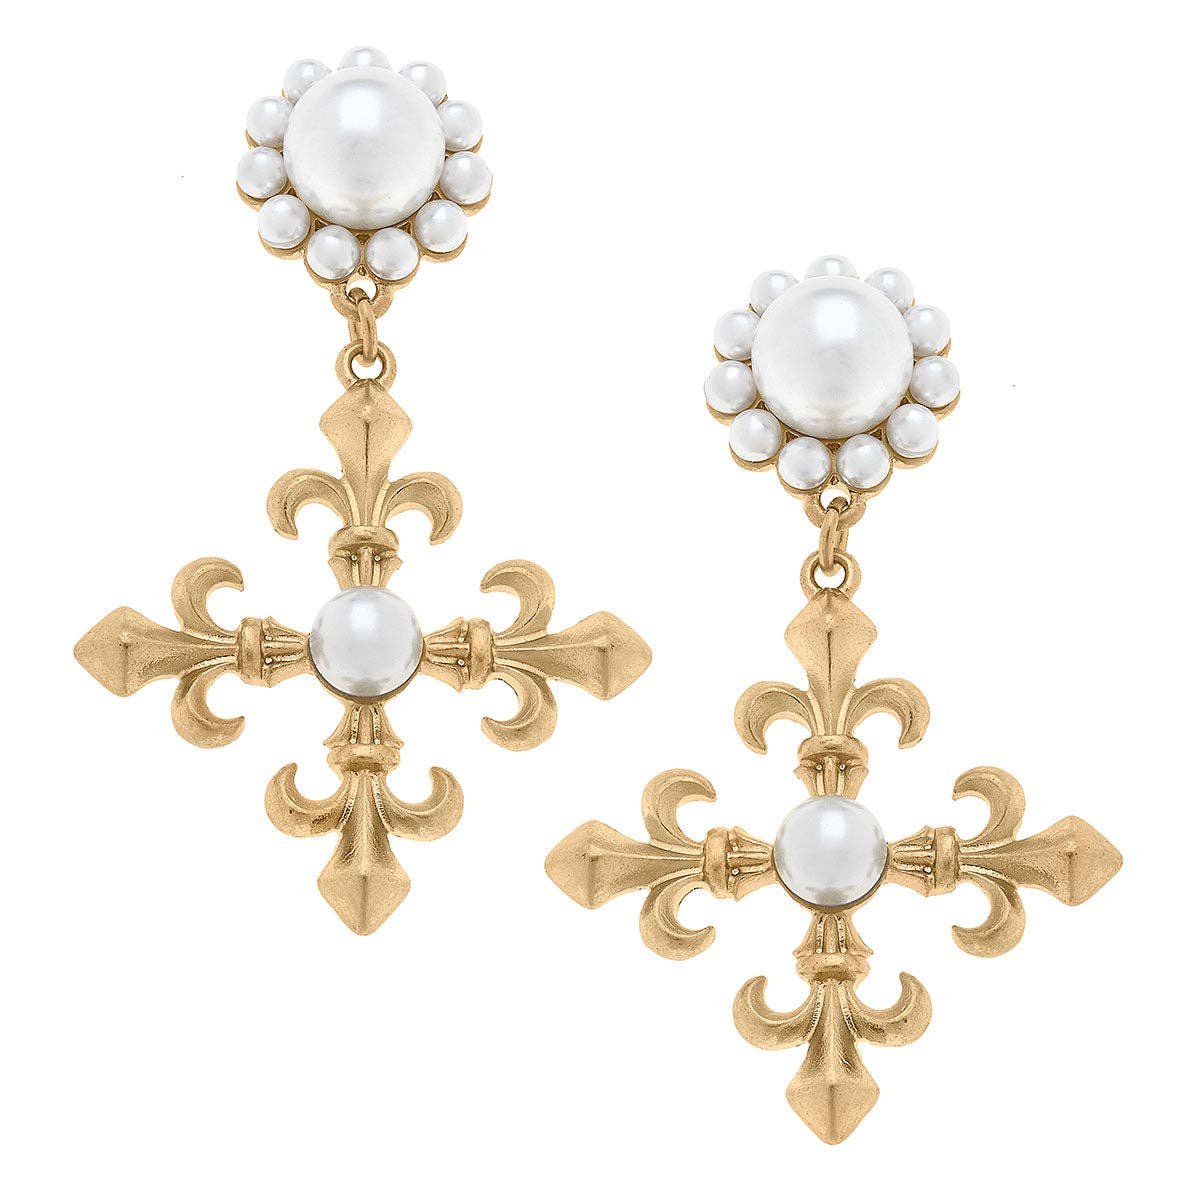 Oliva Fleur de Lis Cross Drop Earrings in Worn Gold